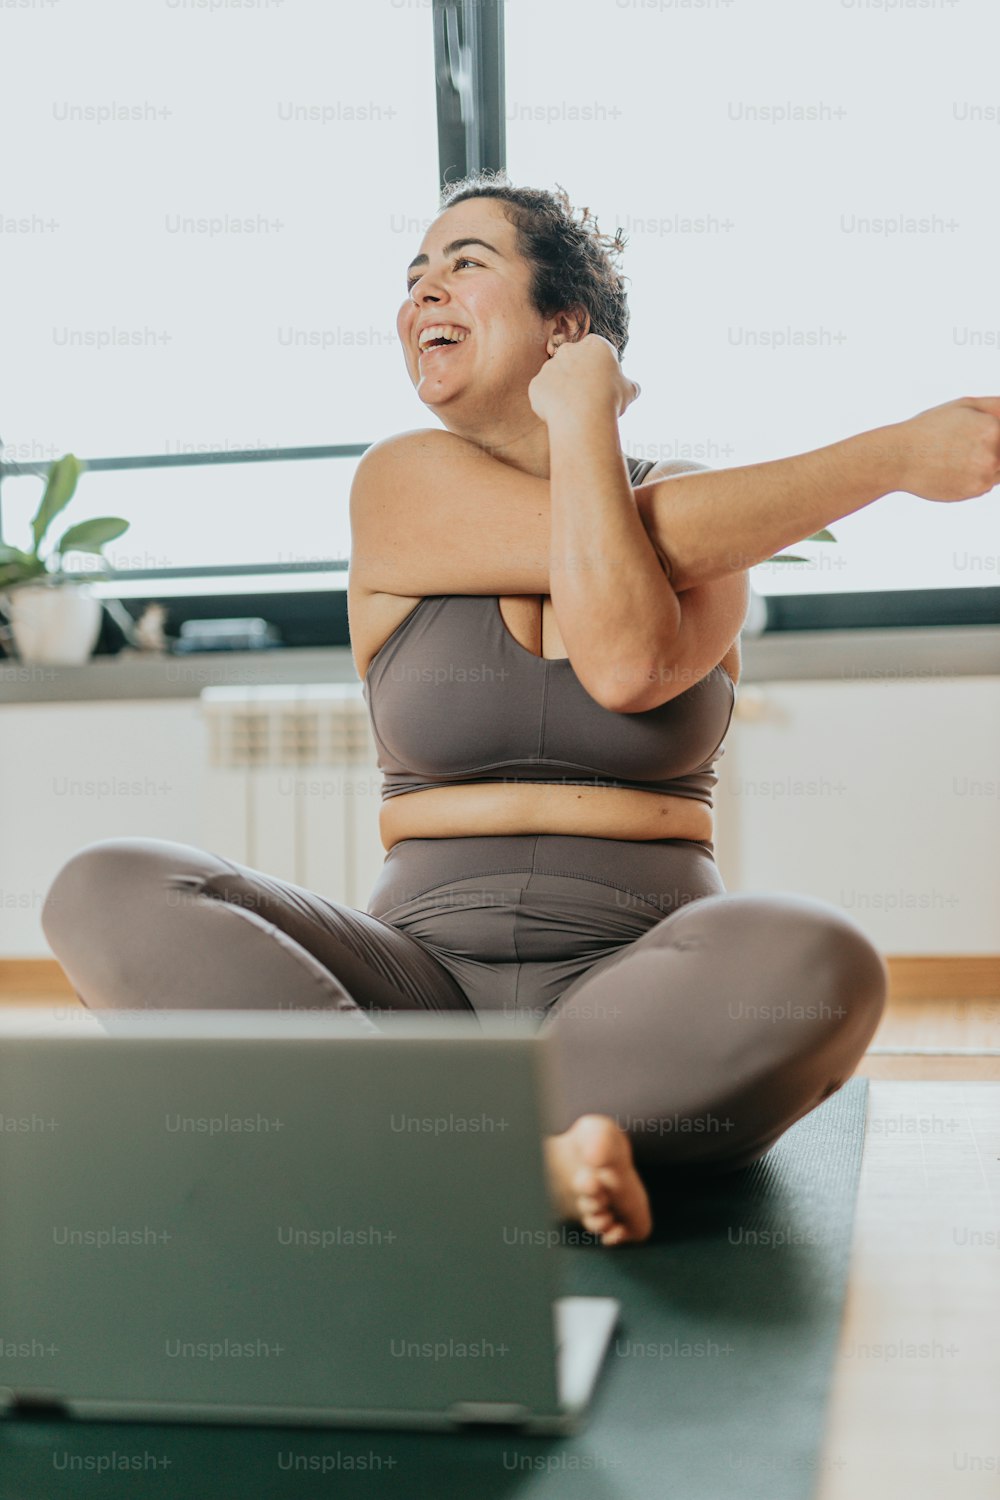 Una mujer sentada en una esterilla de yoga con una computadora portátil frente a ella